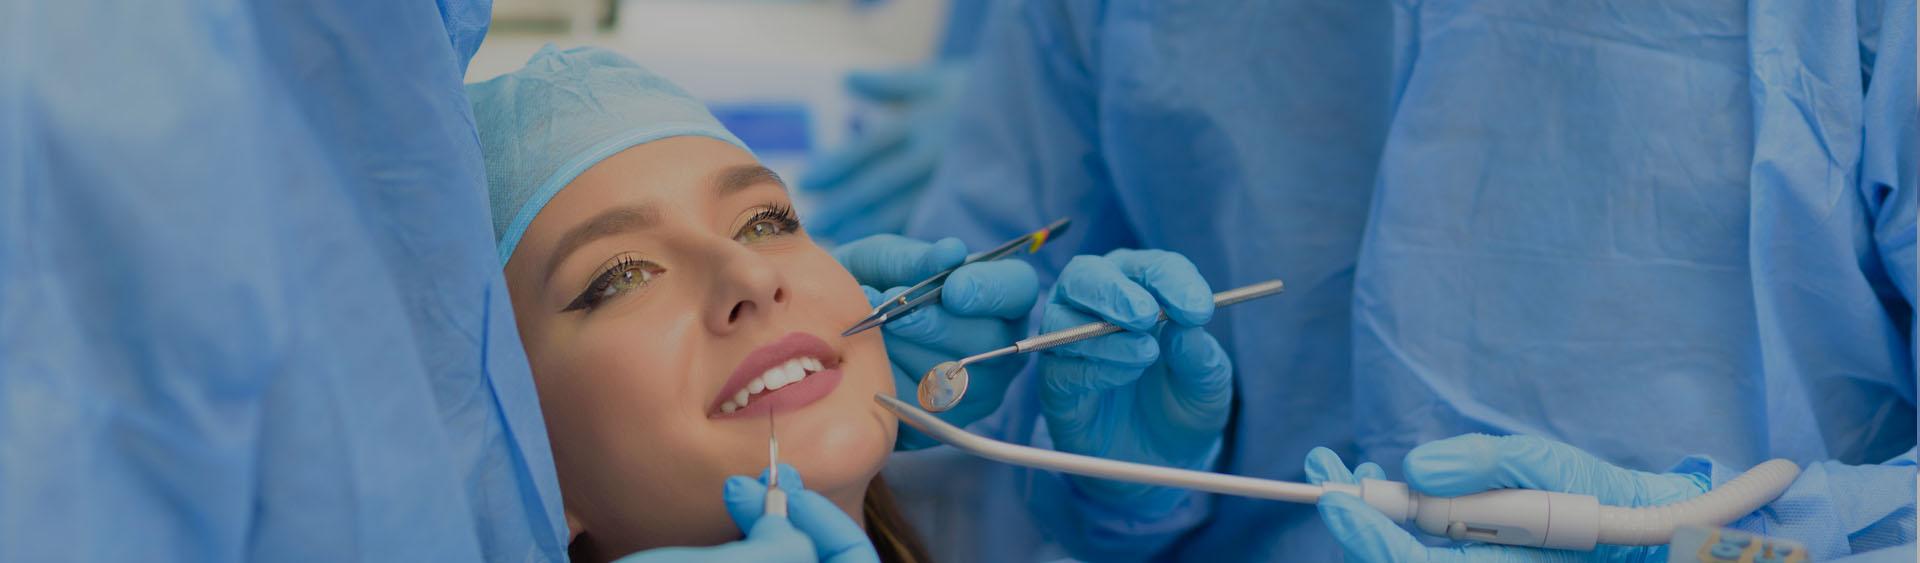 Pacjentka przed usunięciem chirurgicznym zęba